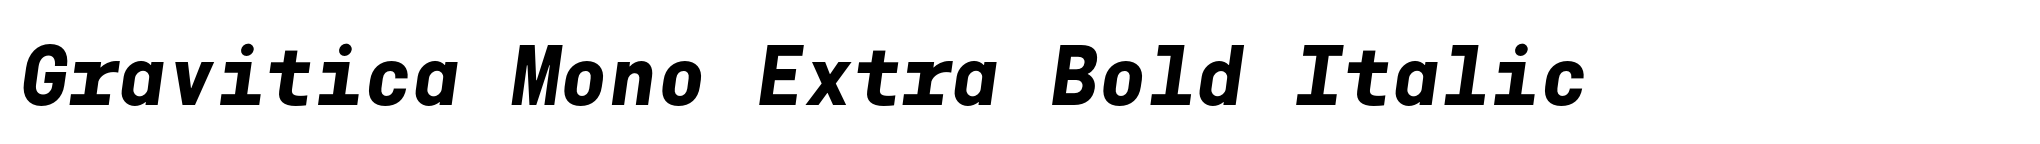 Gravitica Mono Extra Bold Italic image